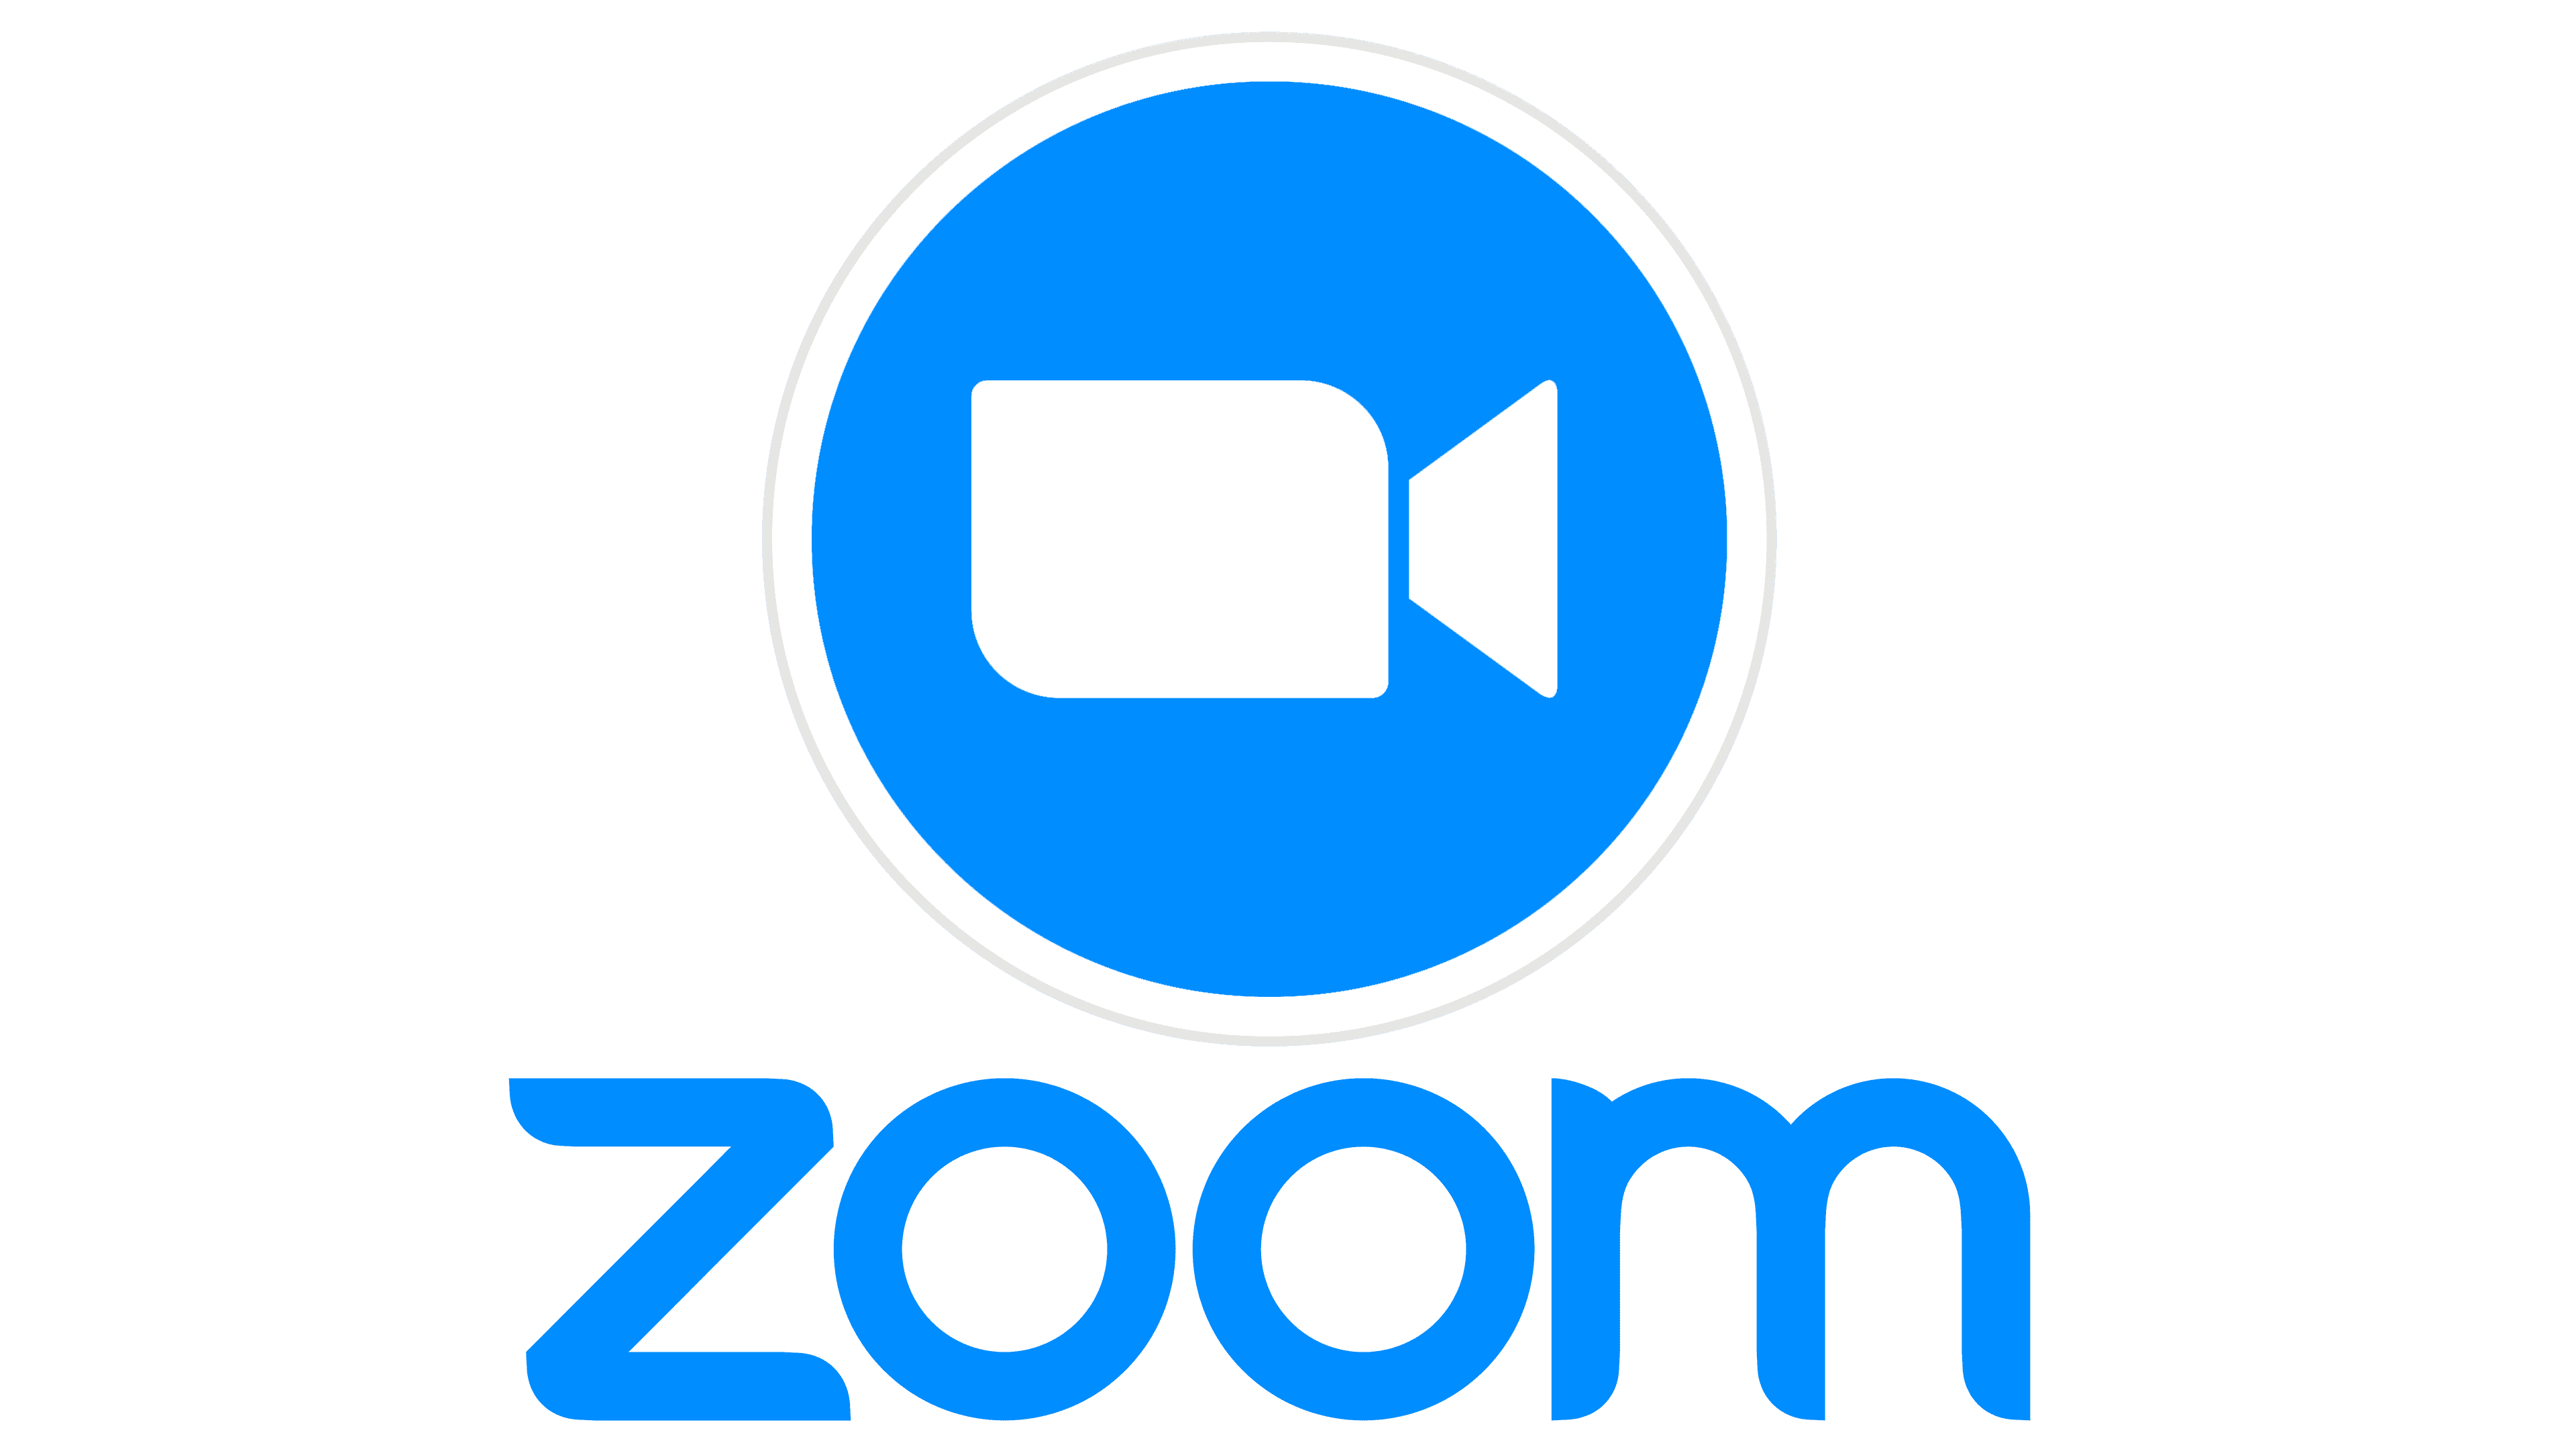 تحميل برنامج زوم zoom الرائع لهواتف الأندرويد والآيفون مجانًا 1